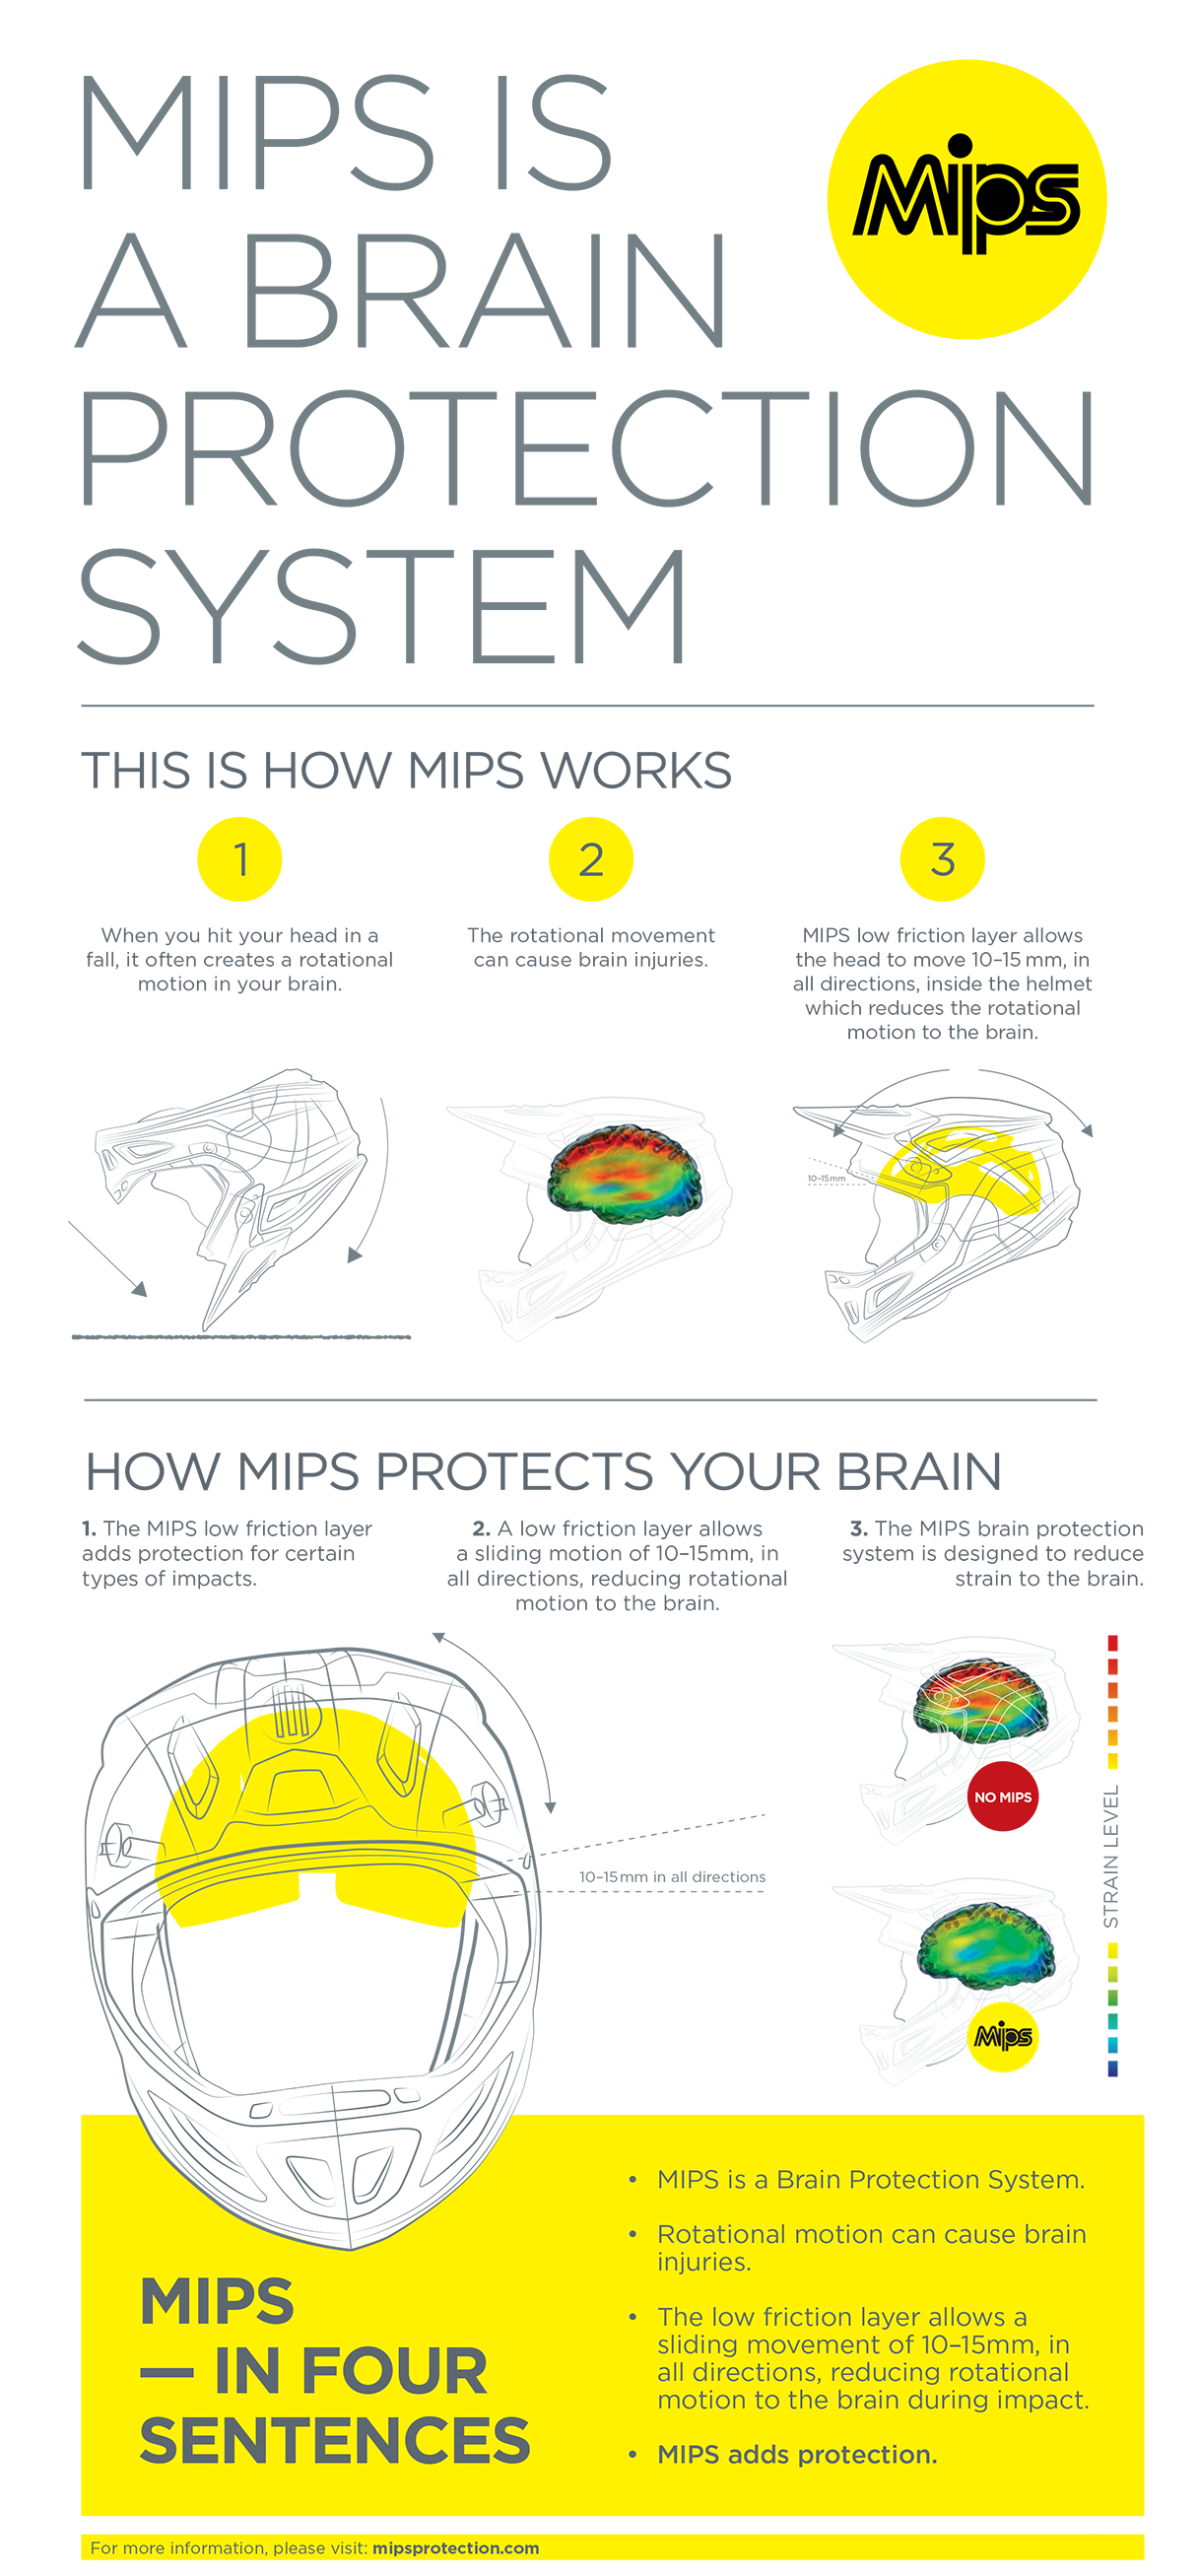 ALPINESTARS Missile Tech Helmet - MIPS® - Matte Black - Medium 8800120-110-MD